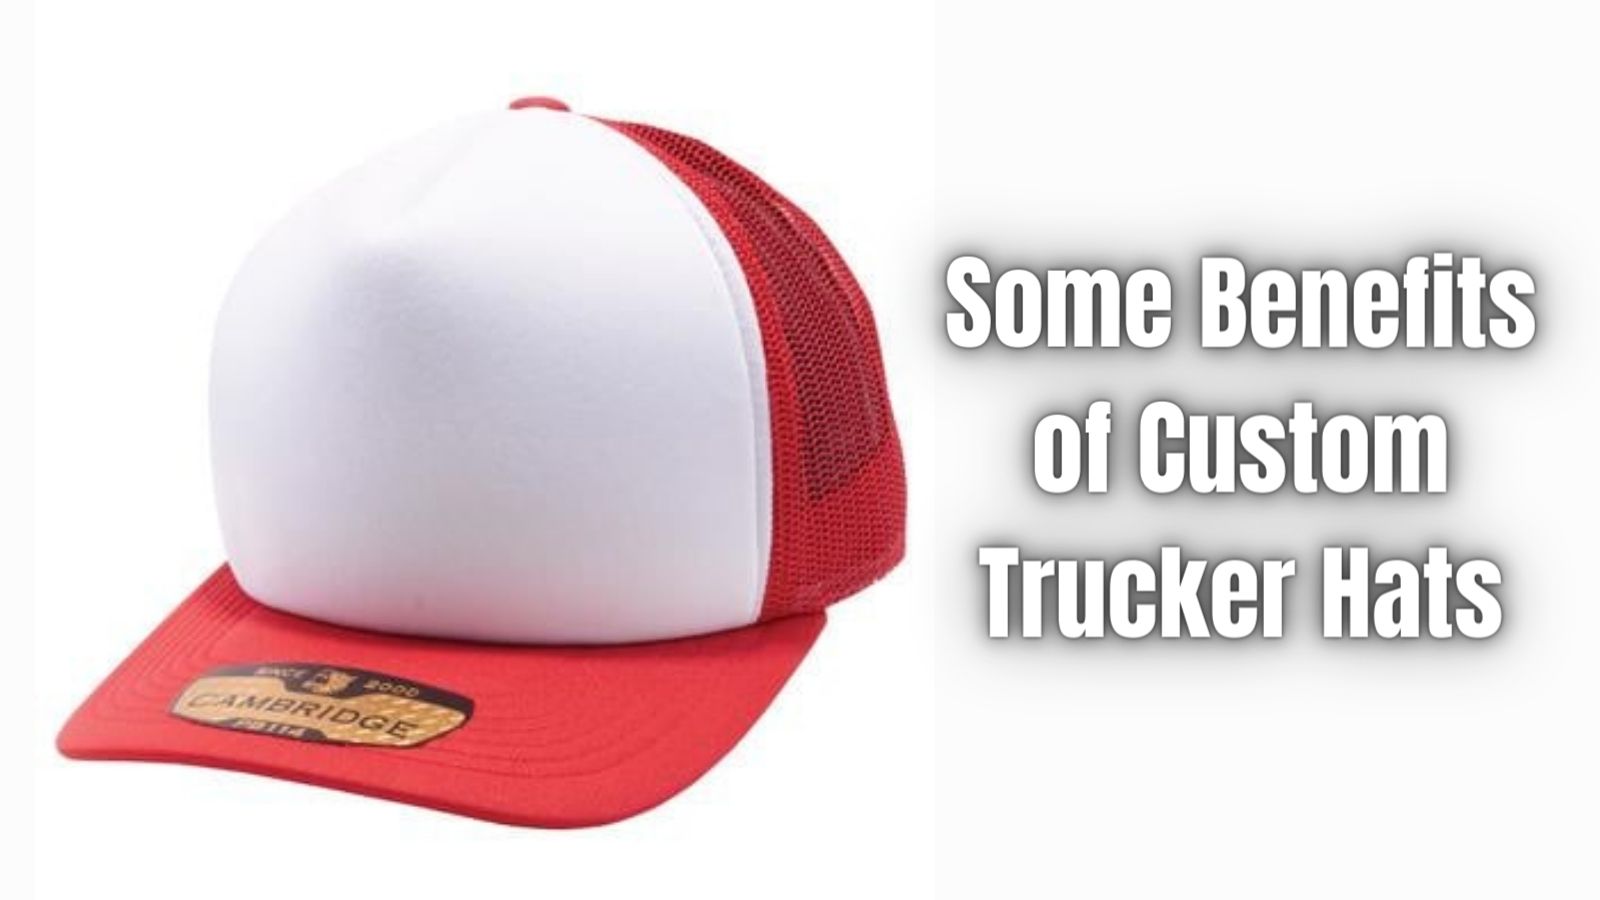 Some Benefits of Custom Trucker Hats